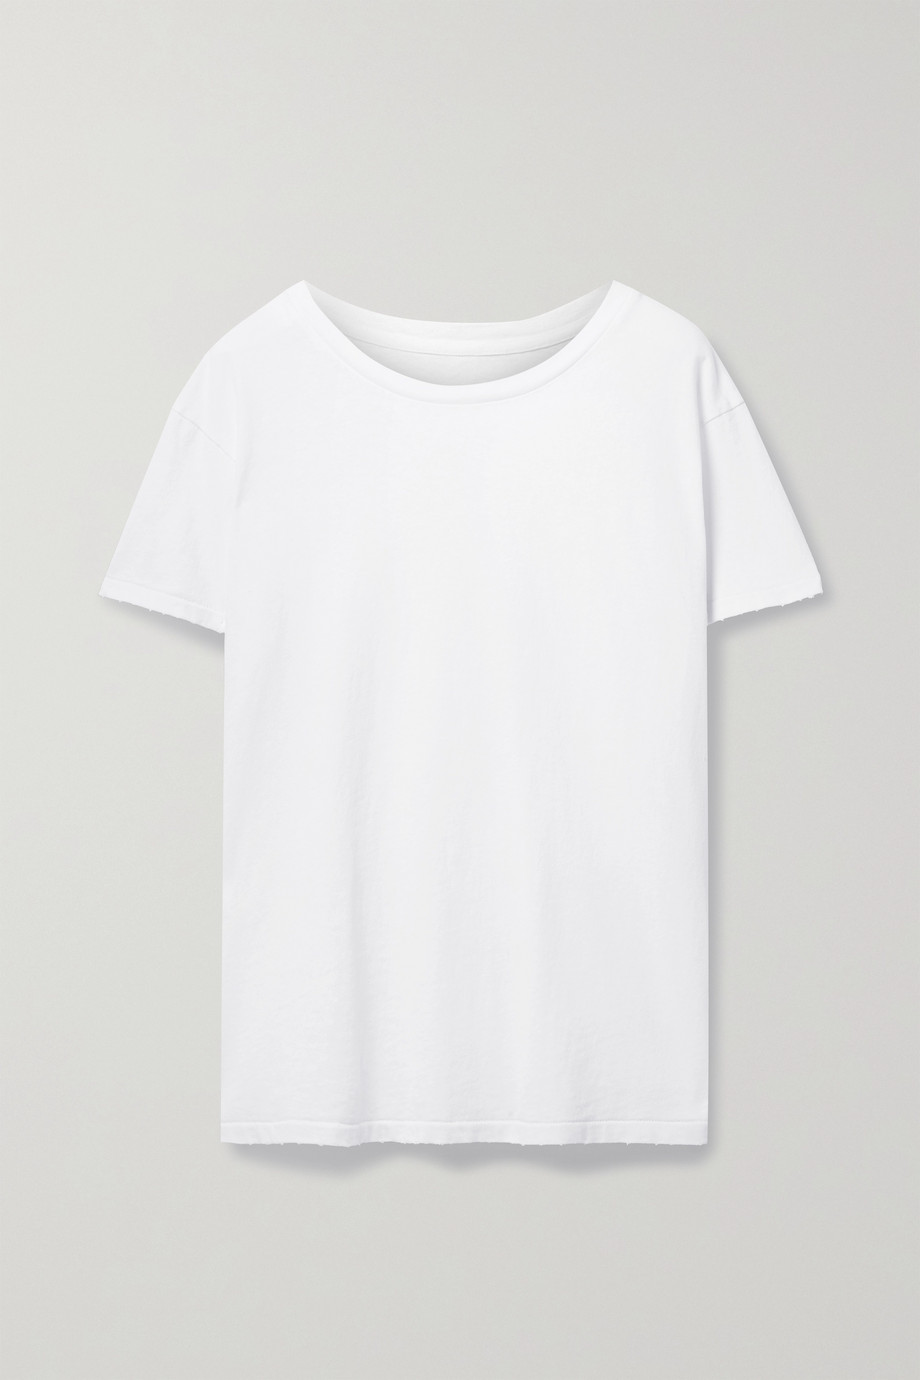 Nili Lotan Brady Distressed Cotton-Jersey T-Shirt